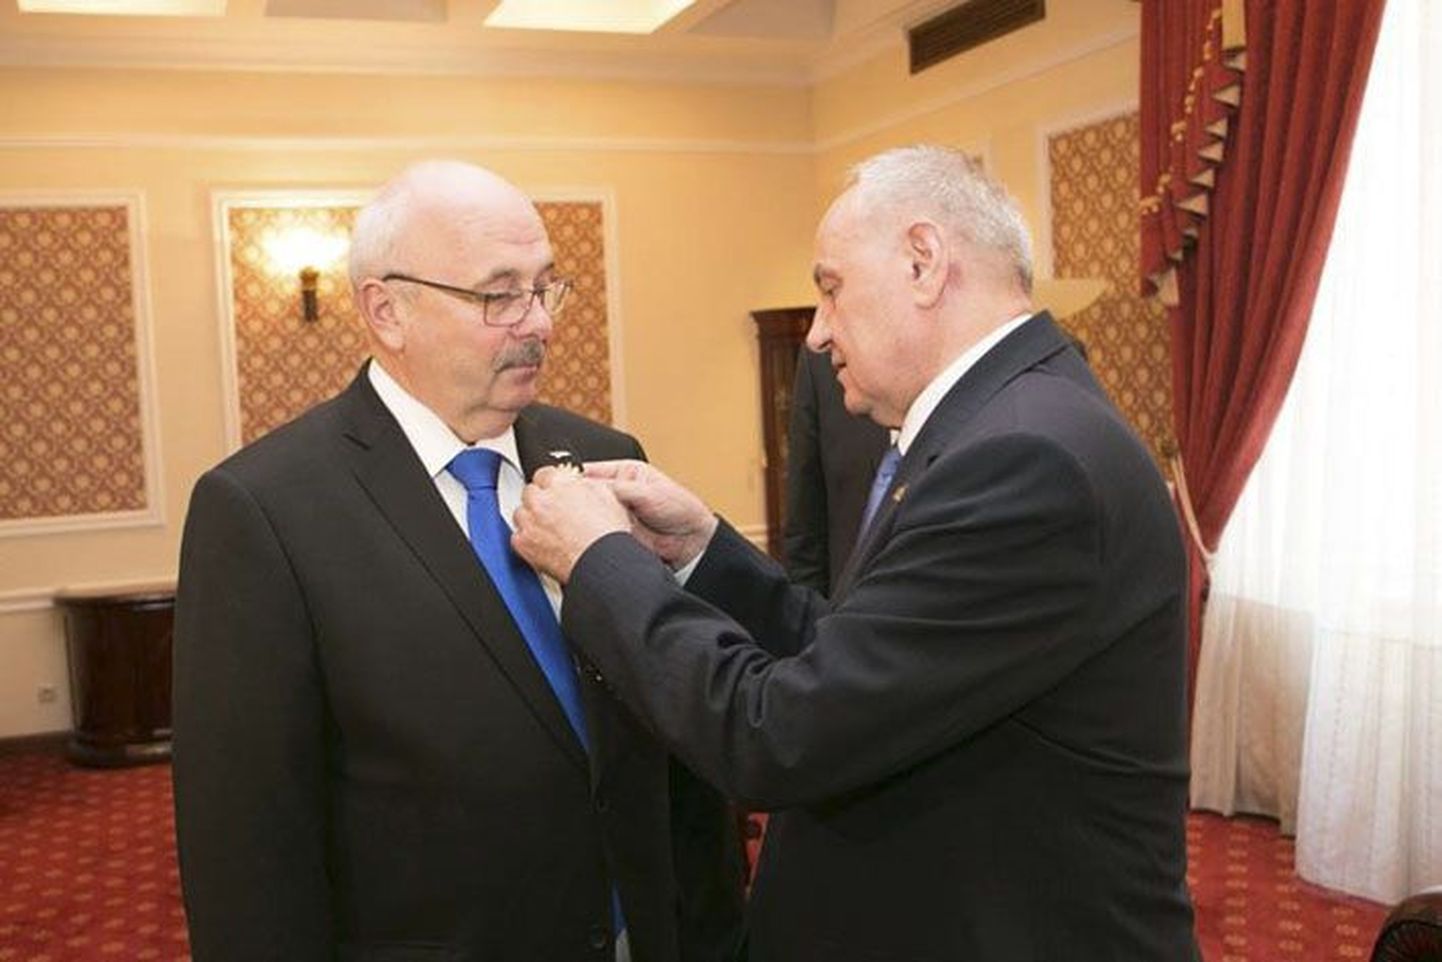 Augusti lõpus kinnitas Moldova president Nicolae Timofti Einar Vallbaumi rinda kõrge autasu - Ordinul de Onorae.